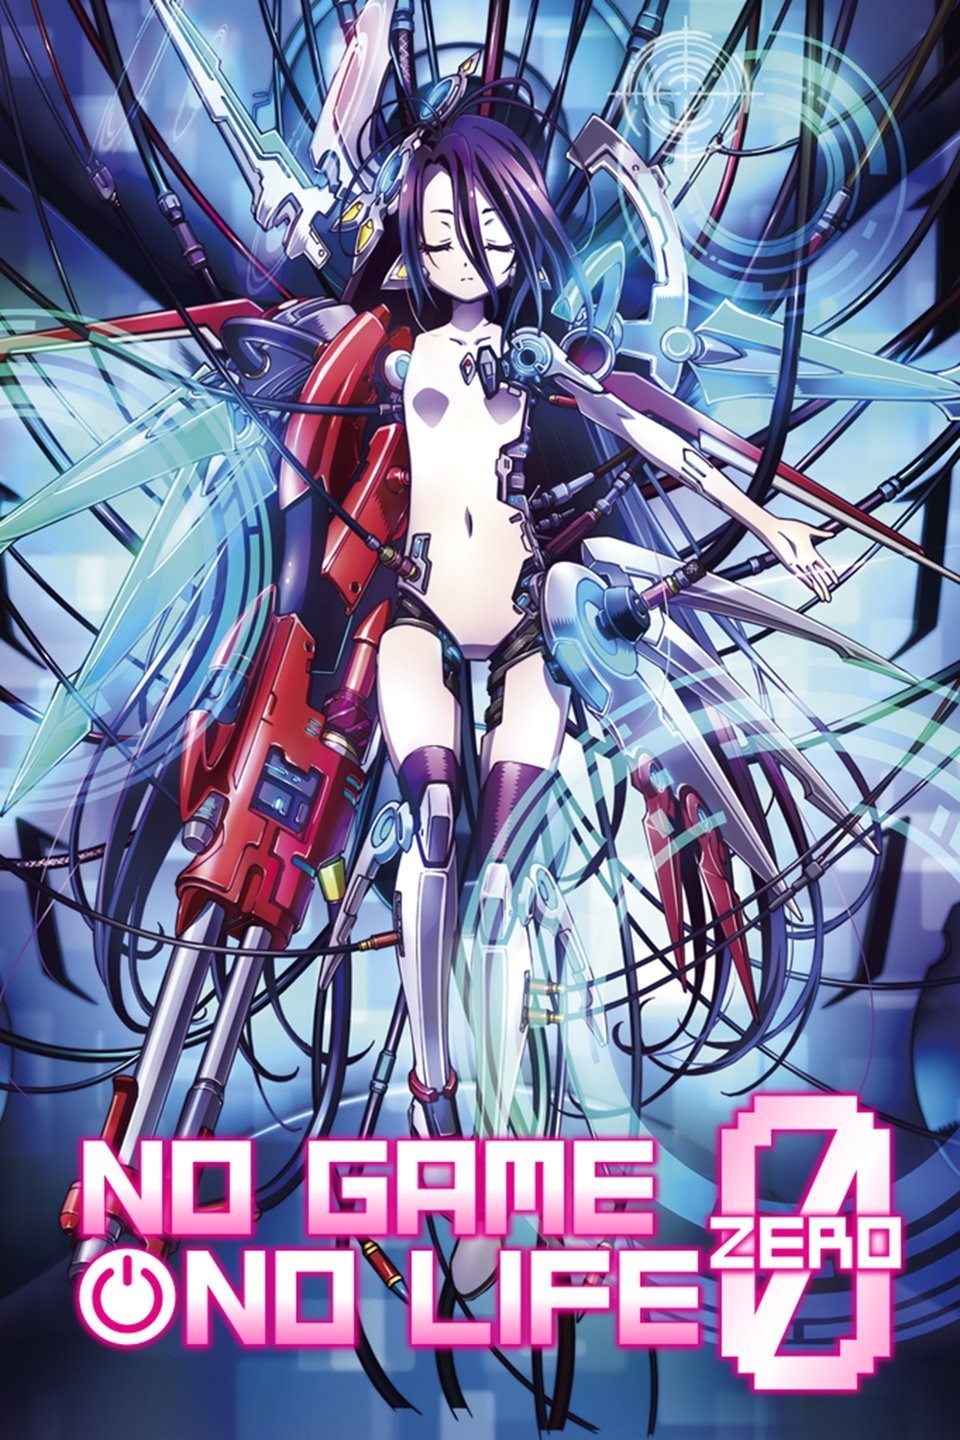 Shiro (白) - No Game No Life (ノーゲーム・ノーライフ) - anime s1 | Stable Diffusion  LoRA | Civitai